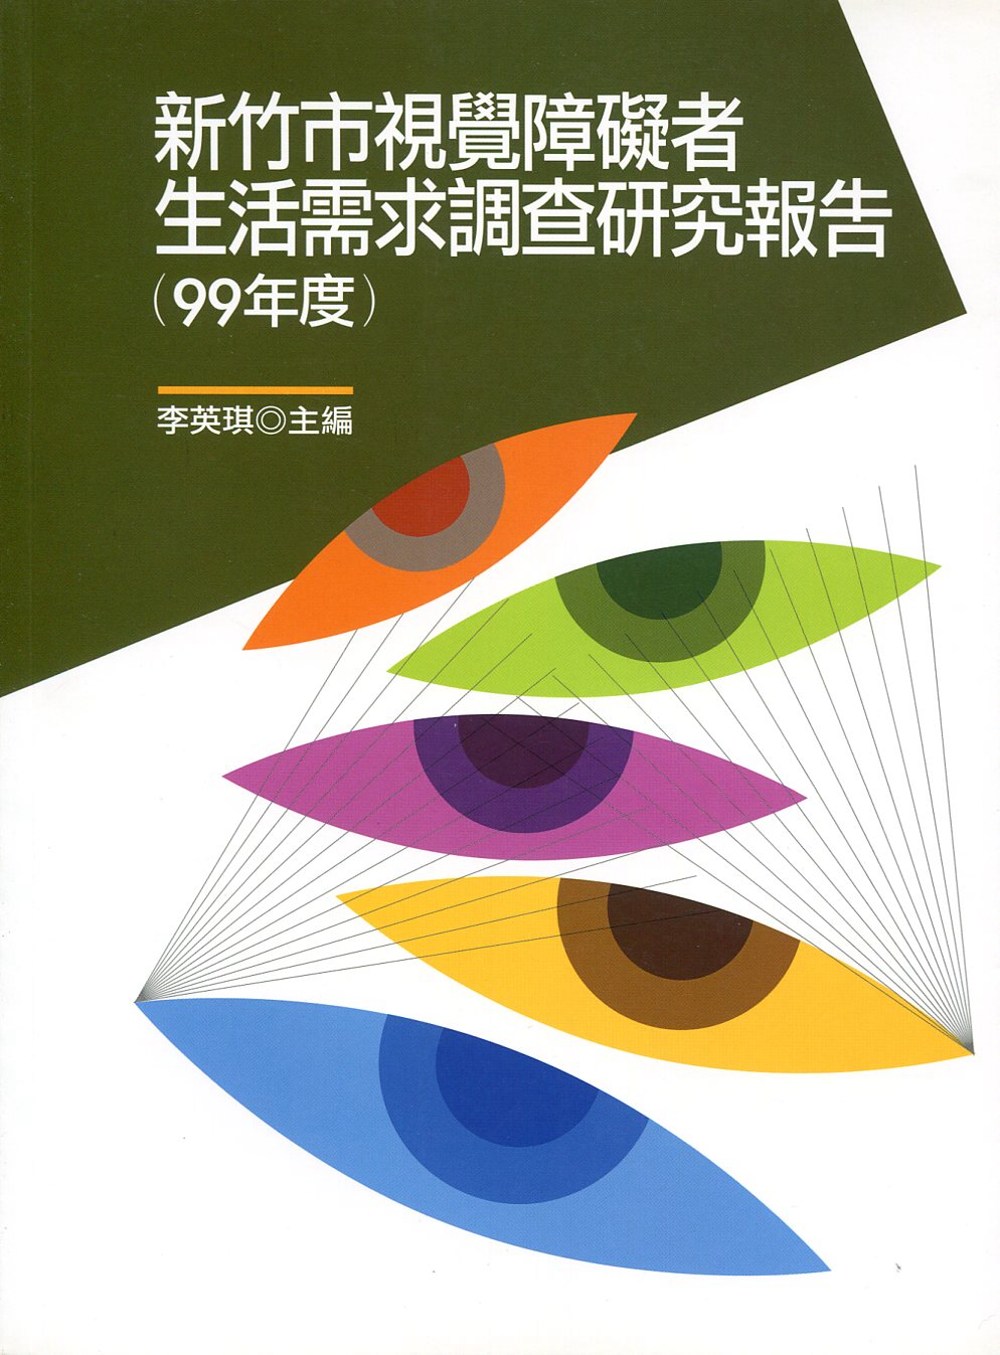 新竹市視覺障礙者生活需求調查研究報告(99年度)